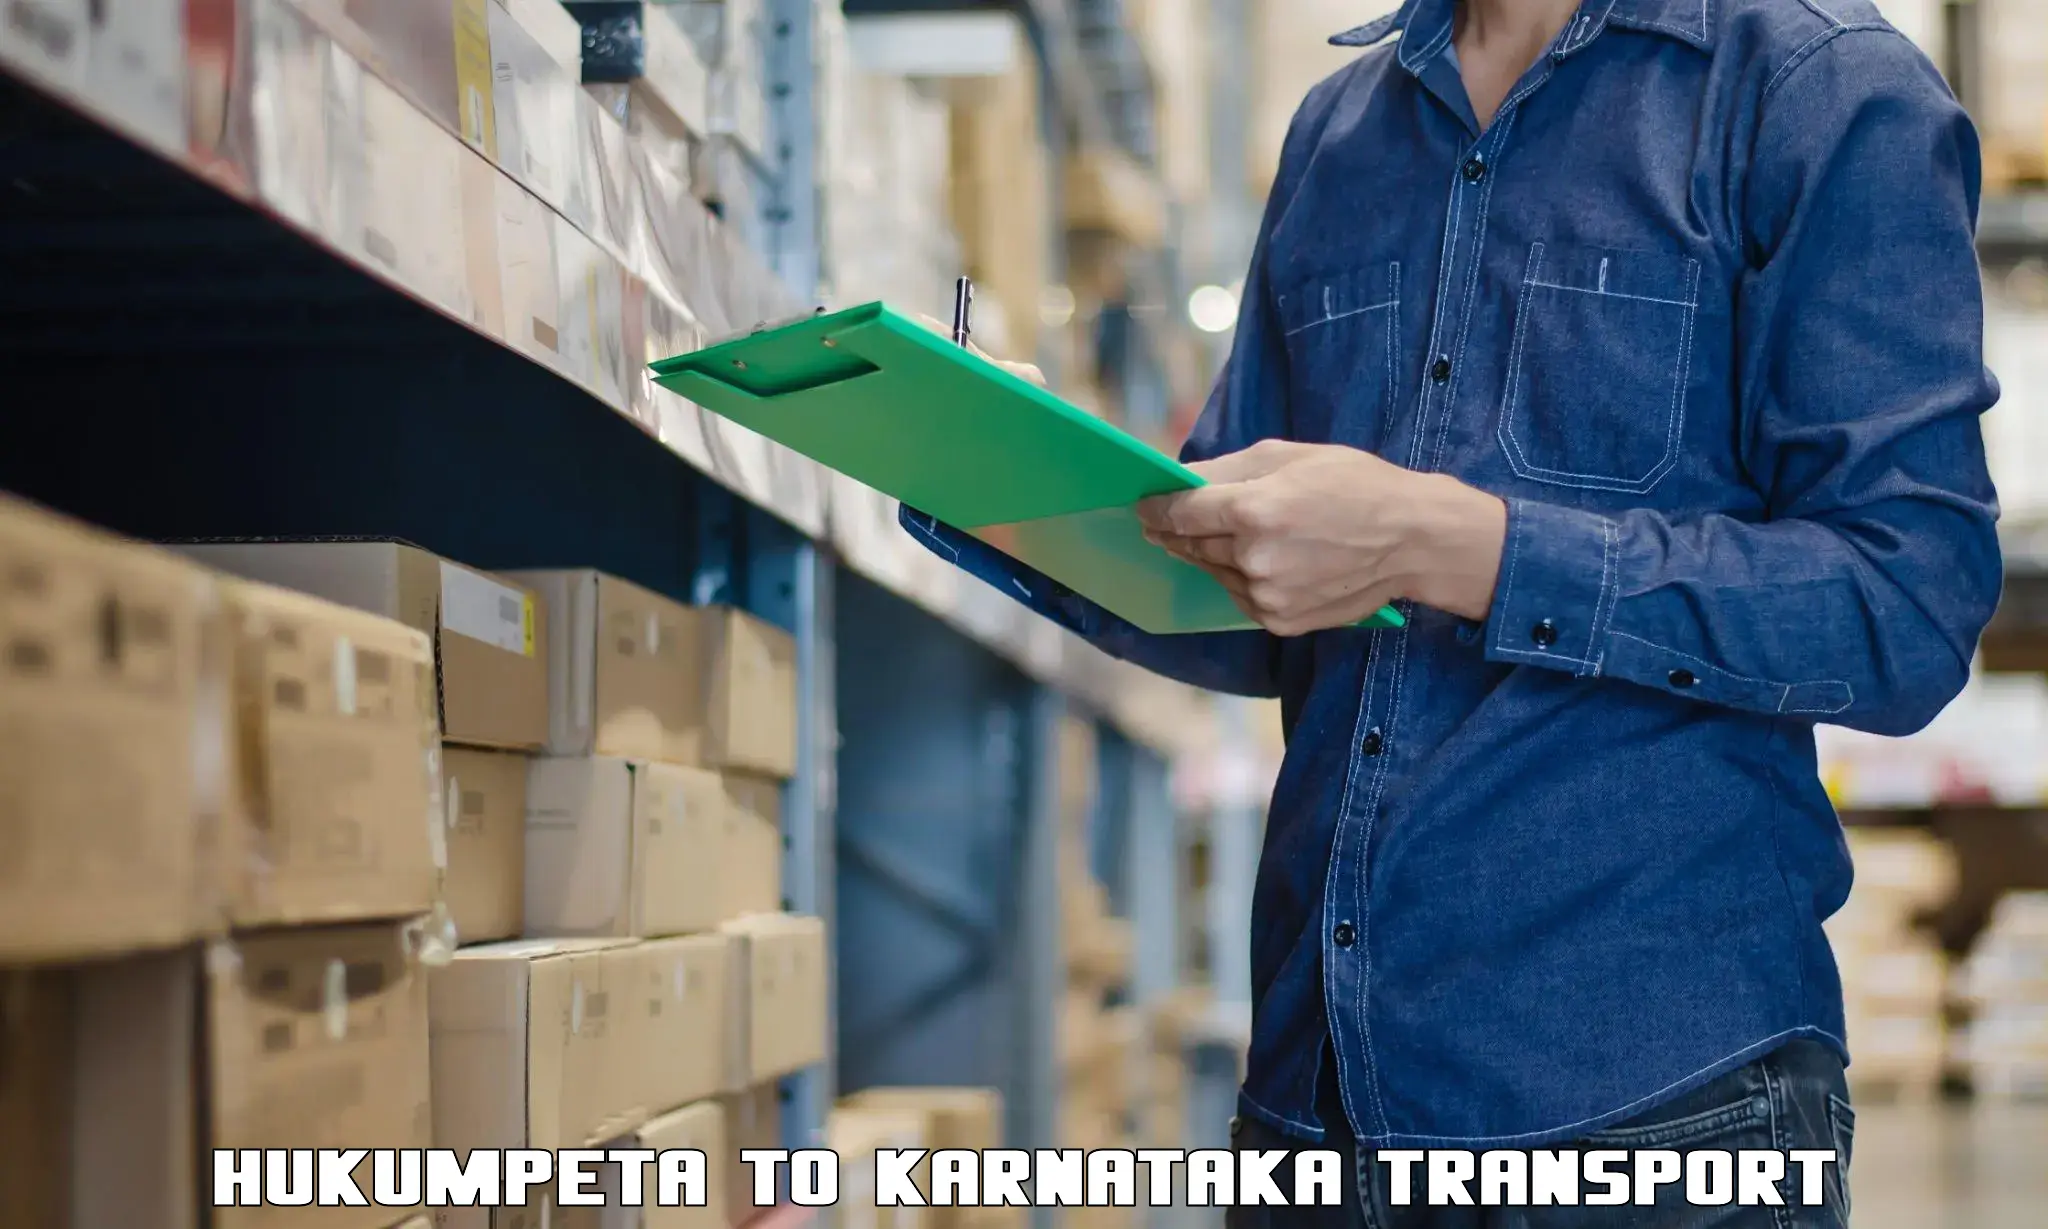 Parcel transport services Hukumpeta to Kundapura